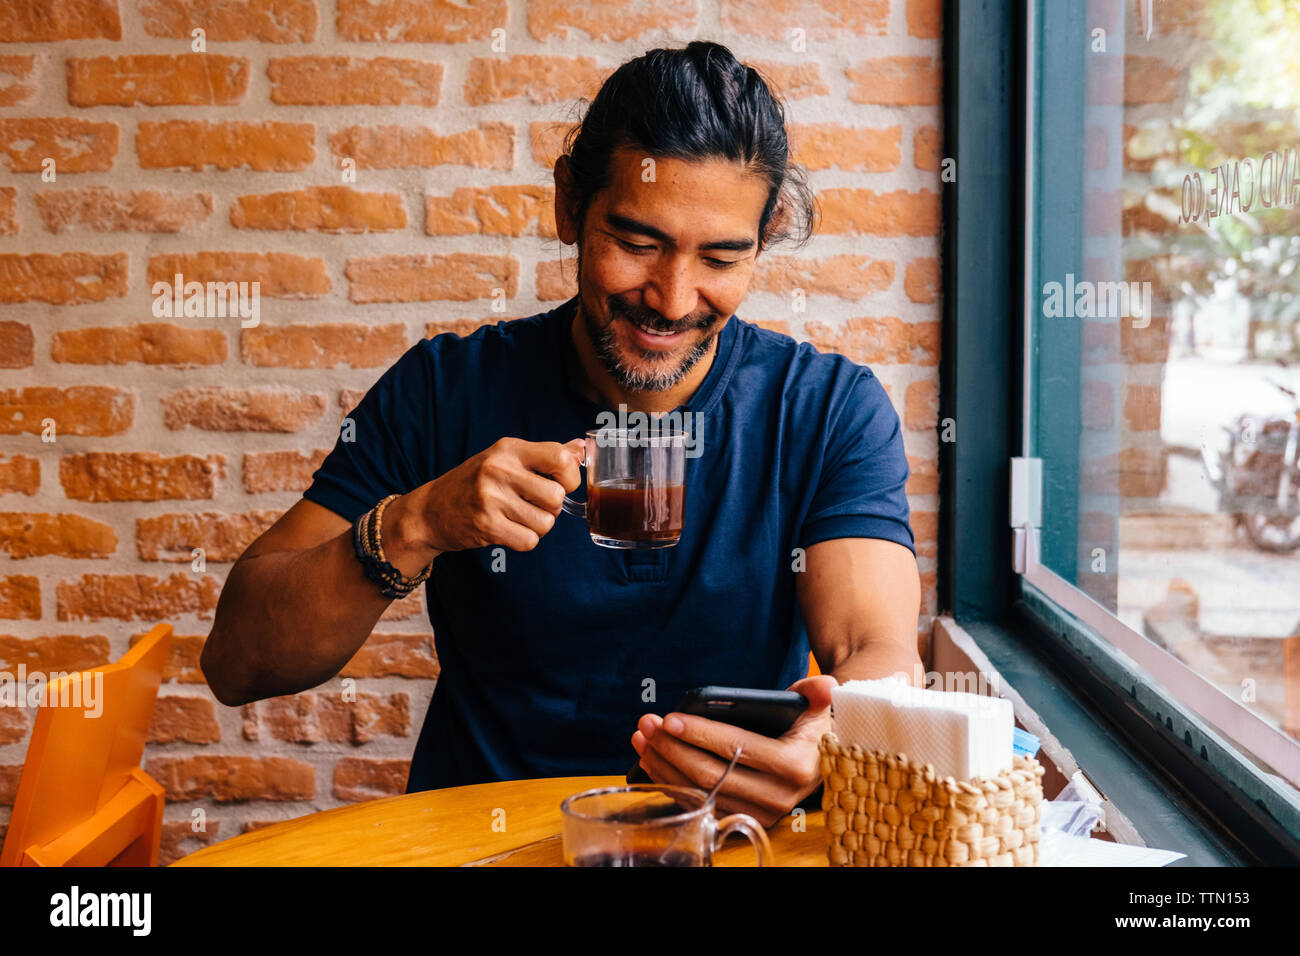 Smiling mature man avec du café noir à l'aide de smart phone against brick wall in cafe Banque D'Images